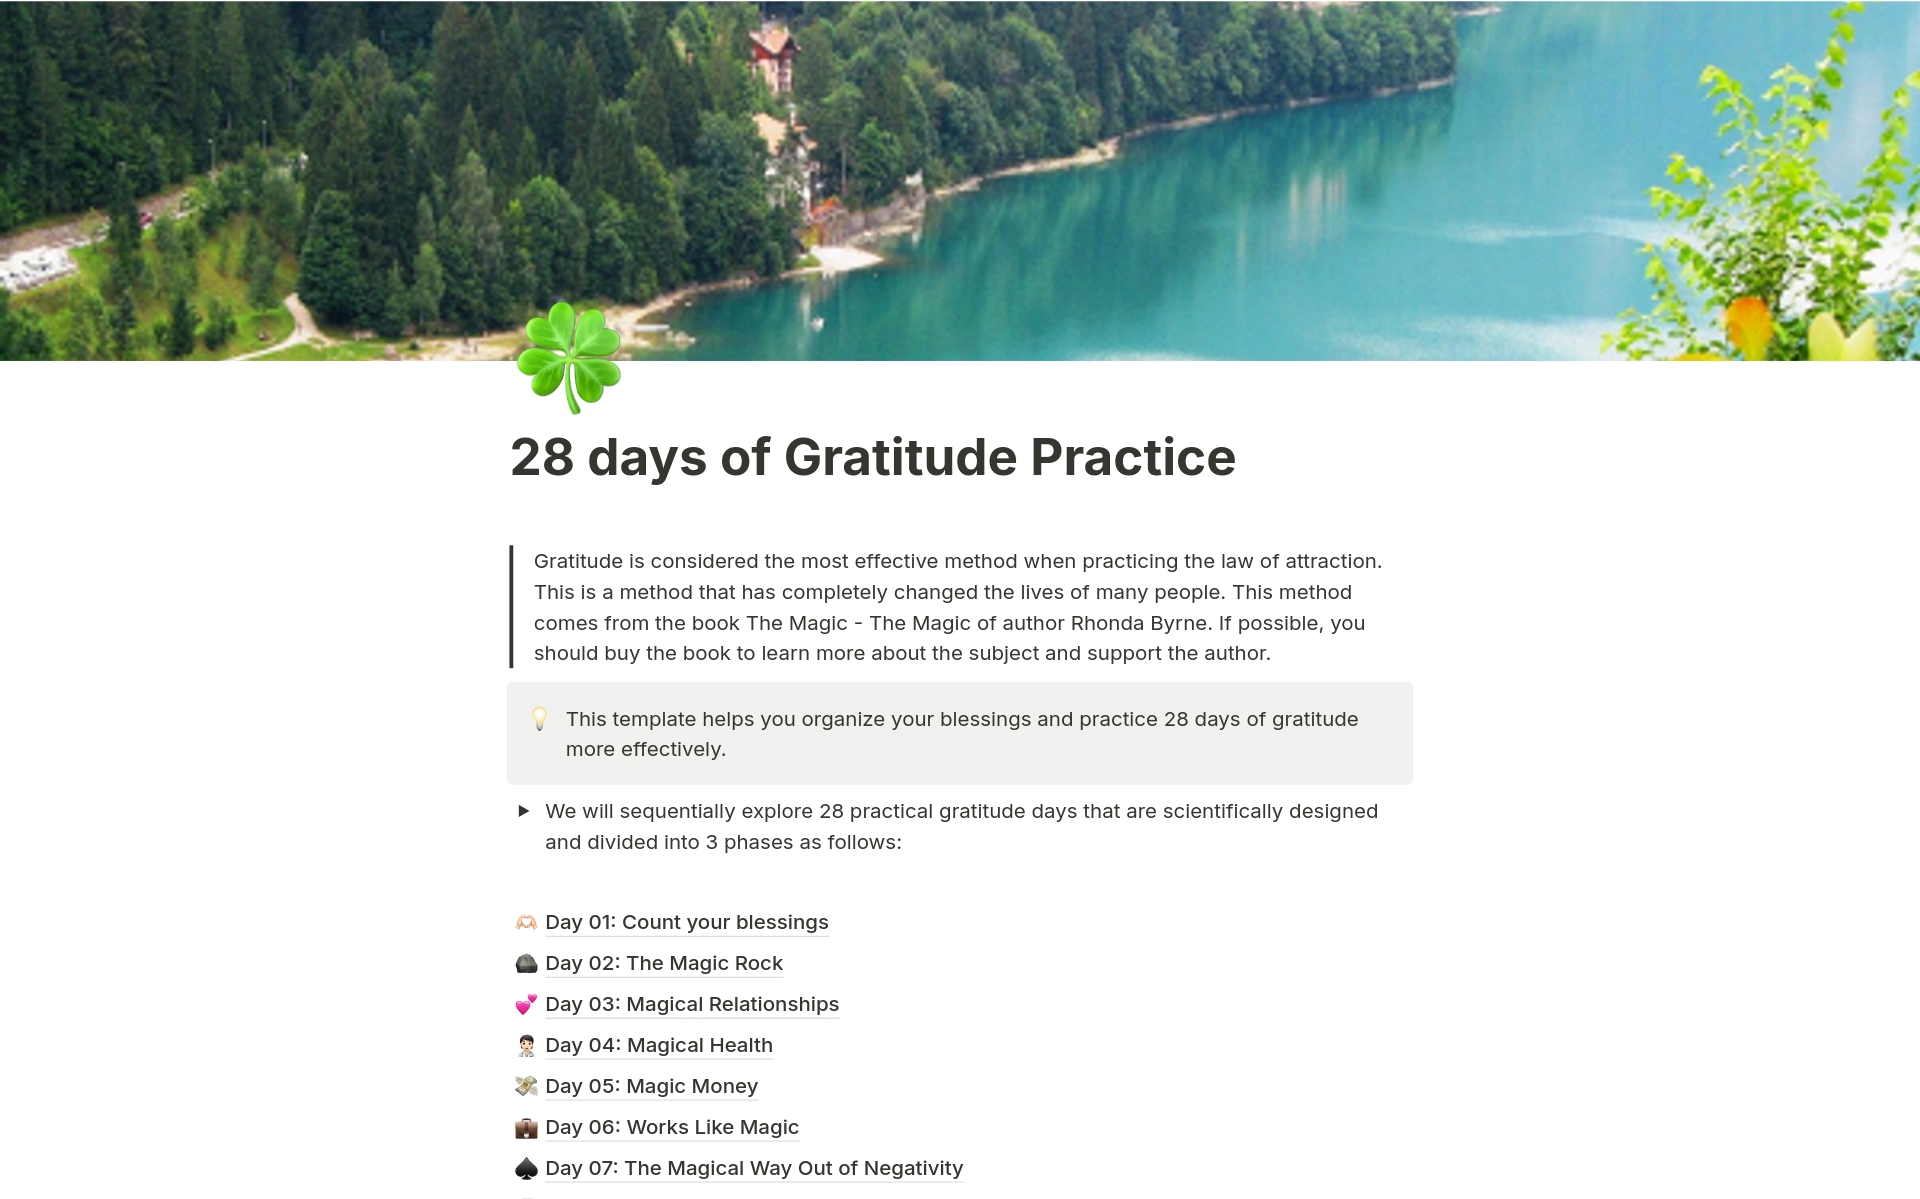 En förhandsgranskning av mallen för 28 days of Gratitude Practice